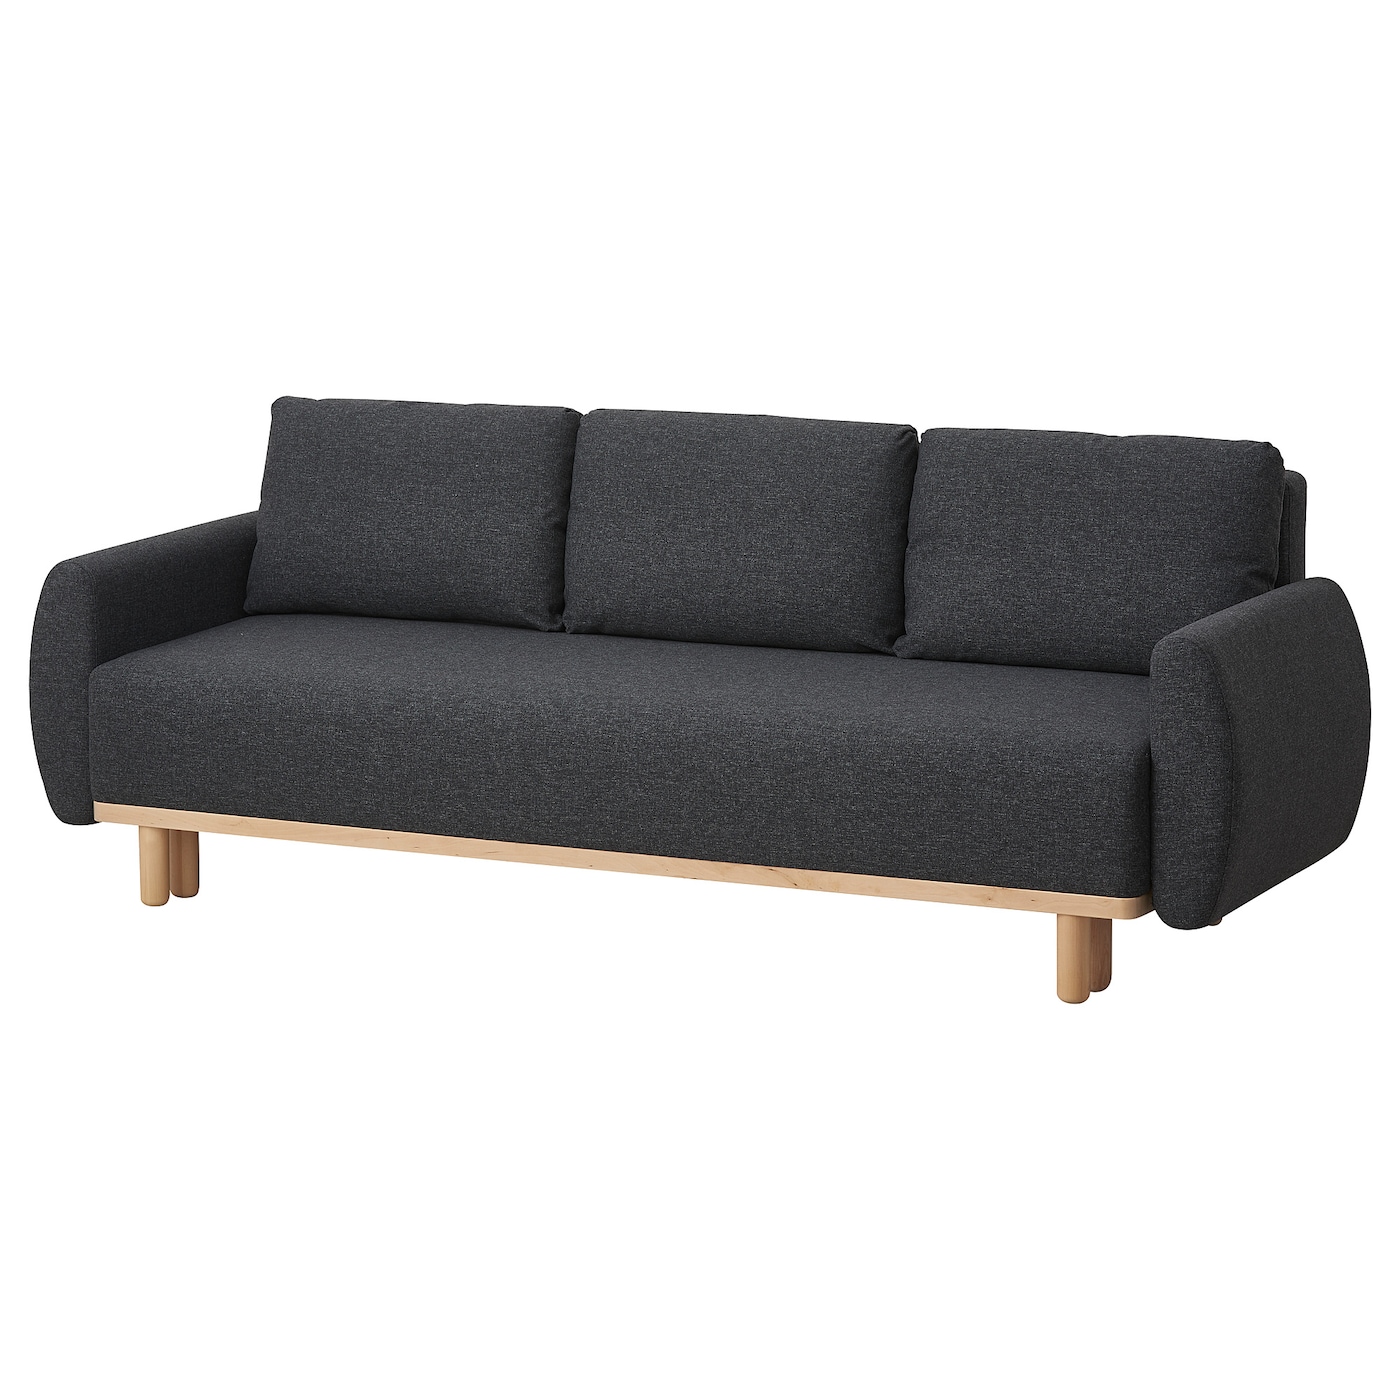 3-местный диван-кровать - IKEA GRUNNARP, 80x89x232см, темно-серый, ГРУННАРП ИКЕА